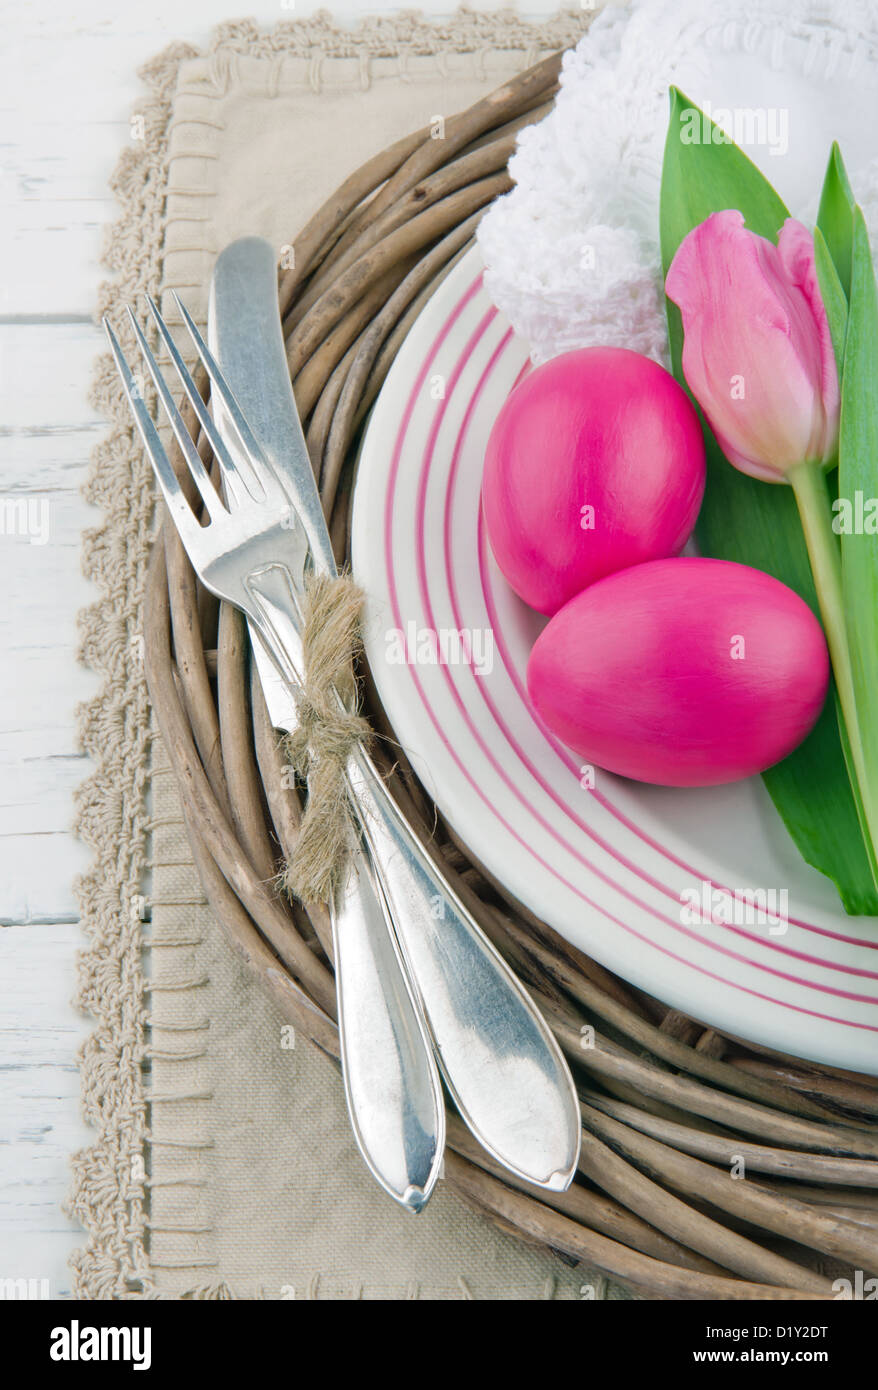 Dîner de Pâques avec deux oeufs et la tulipe rose, fond en bois blanc rustique Banque D'Images